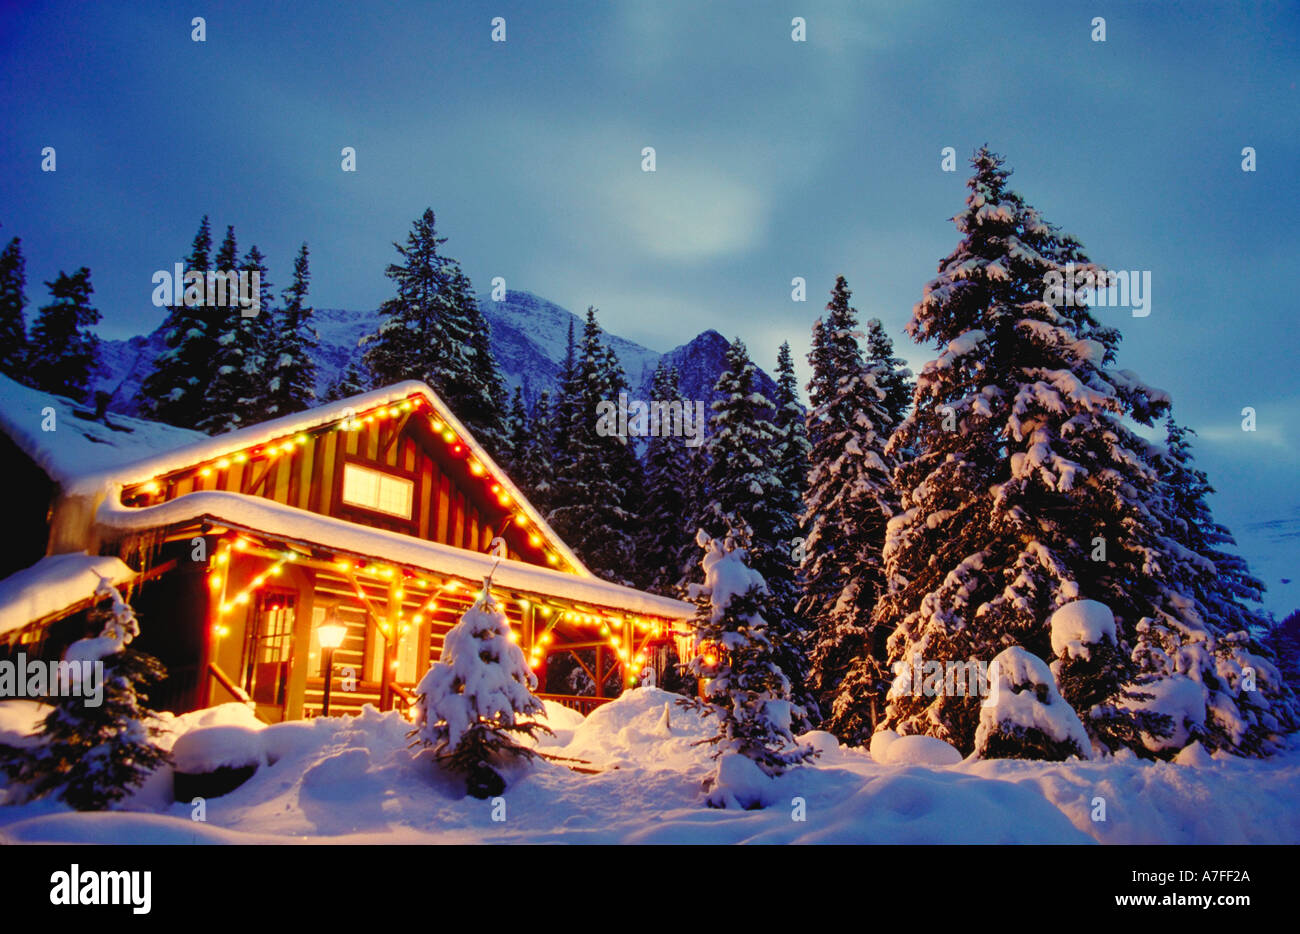 Hütte im Schnee mit Weihnachtsbeleuchtung in der Nacht und Schnee bedeckte  Bäume rund um Stockfotografie - Alamy